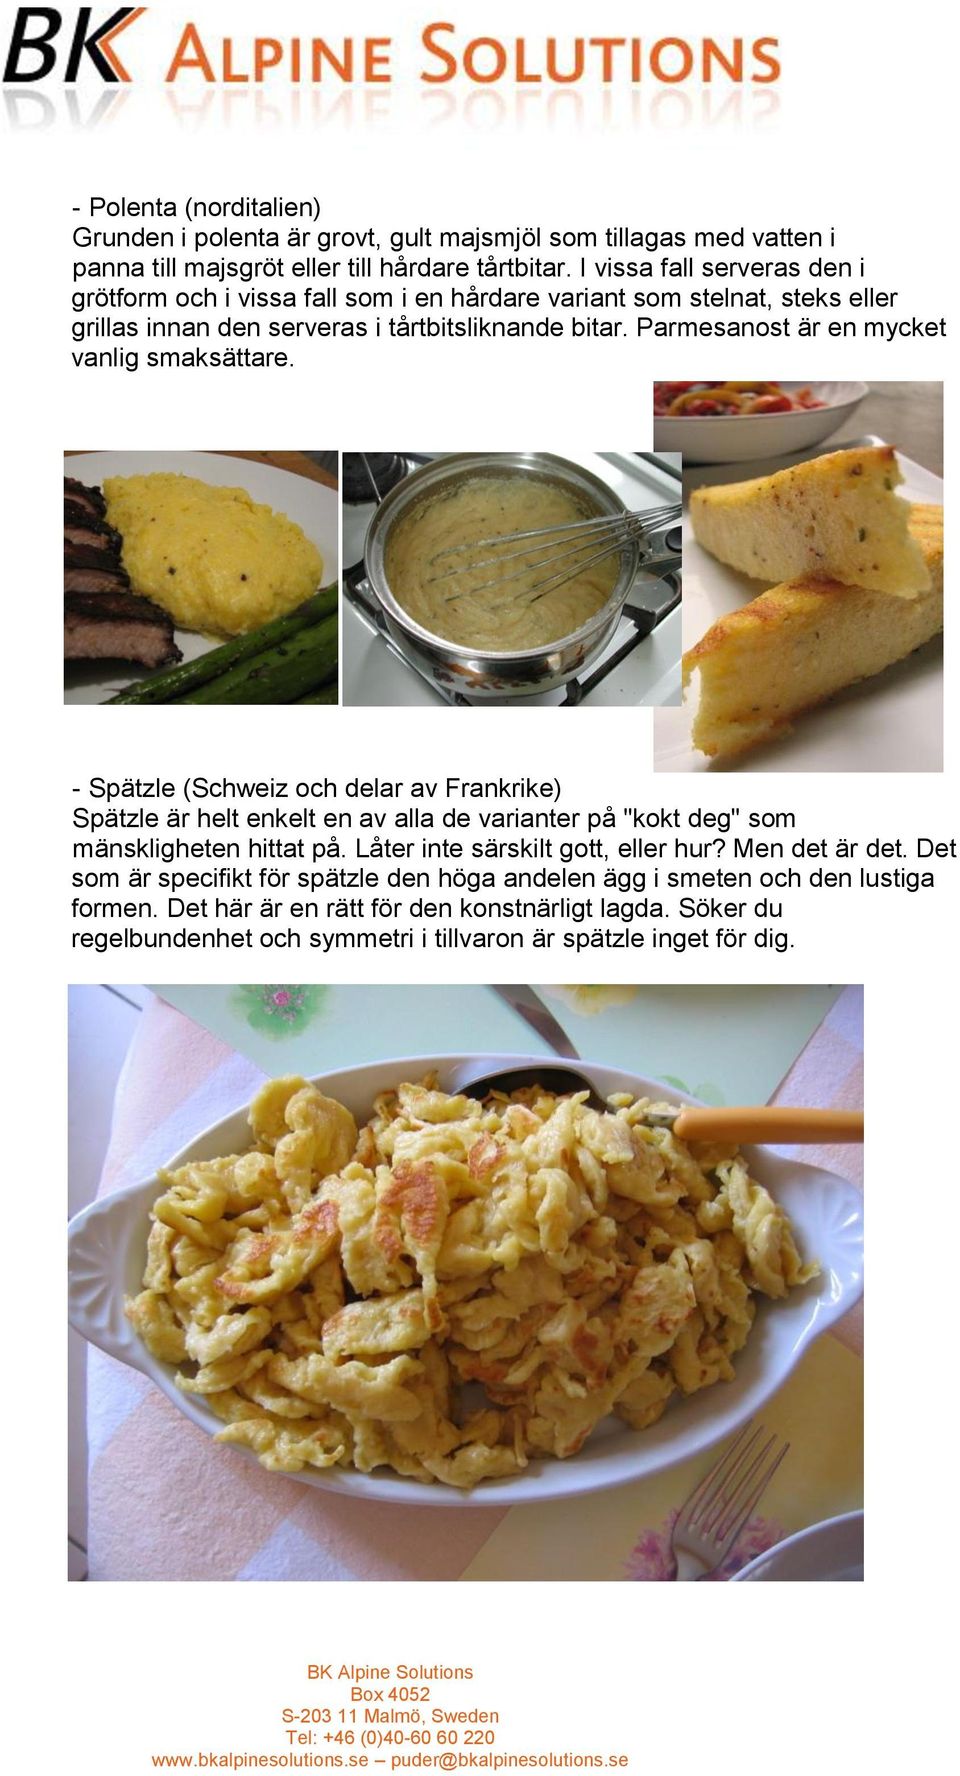 Parmesanost är en mycket vanlig smaksättare. - Spätzle (Schweiz och delar av Frankrike) Spätzle är helt enkelt en av alla de varianter på "kokt deg" som mänskligheten hittat på.